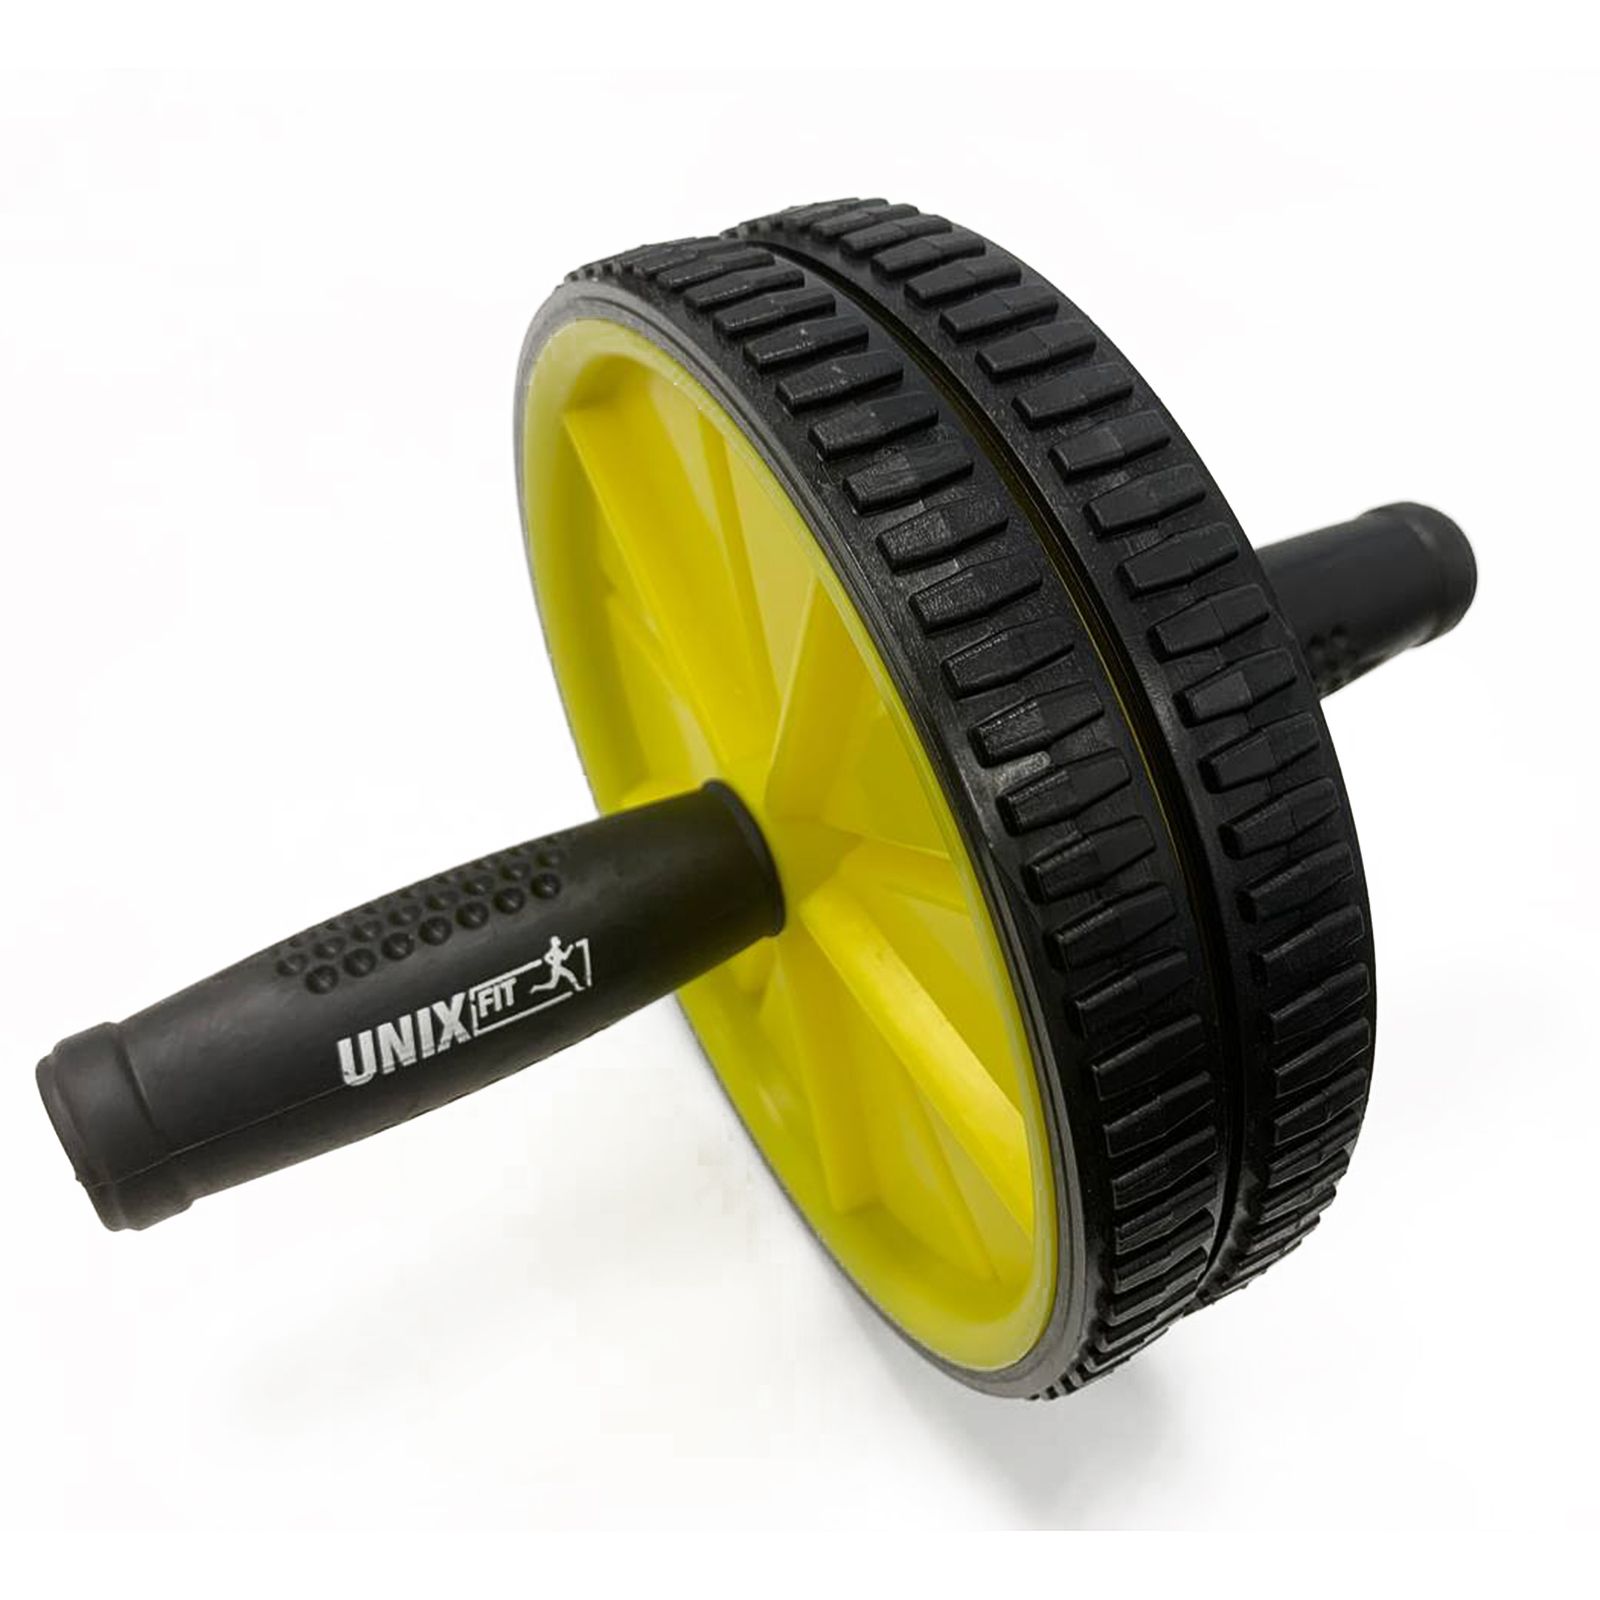 Ролик для пресса с ковриком под колени UNIX Fit D17,5 см, черно-желтый